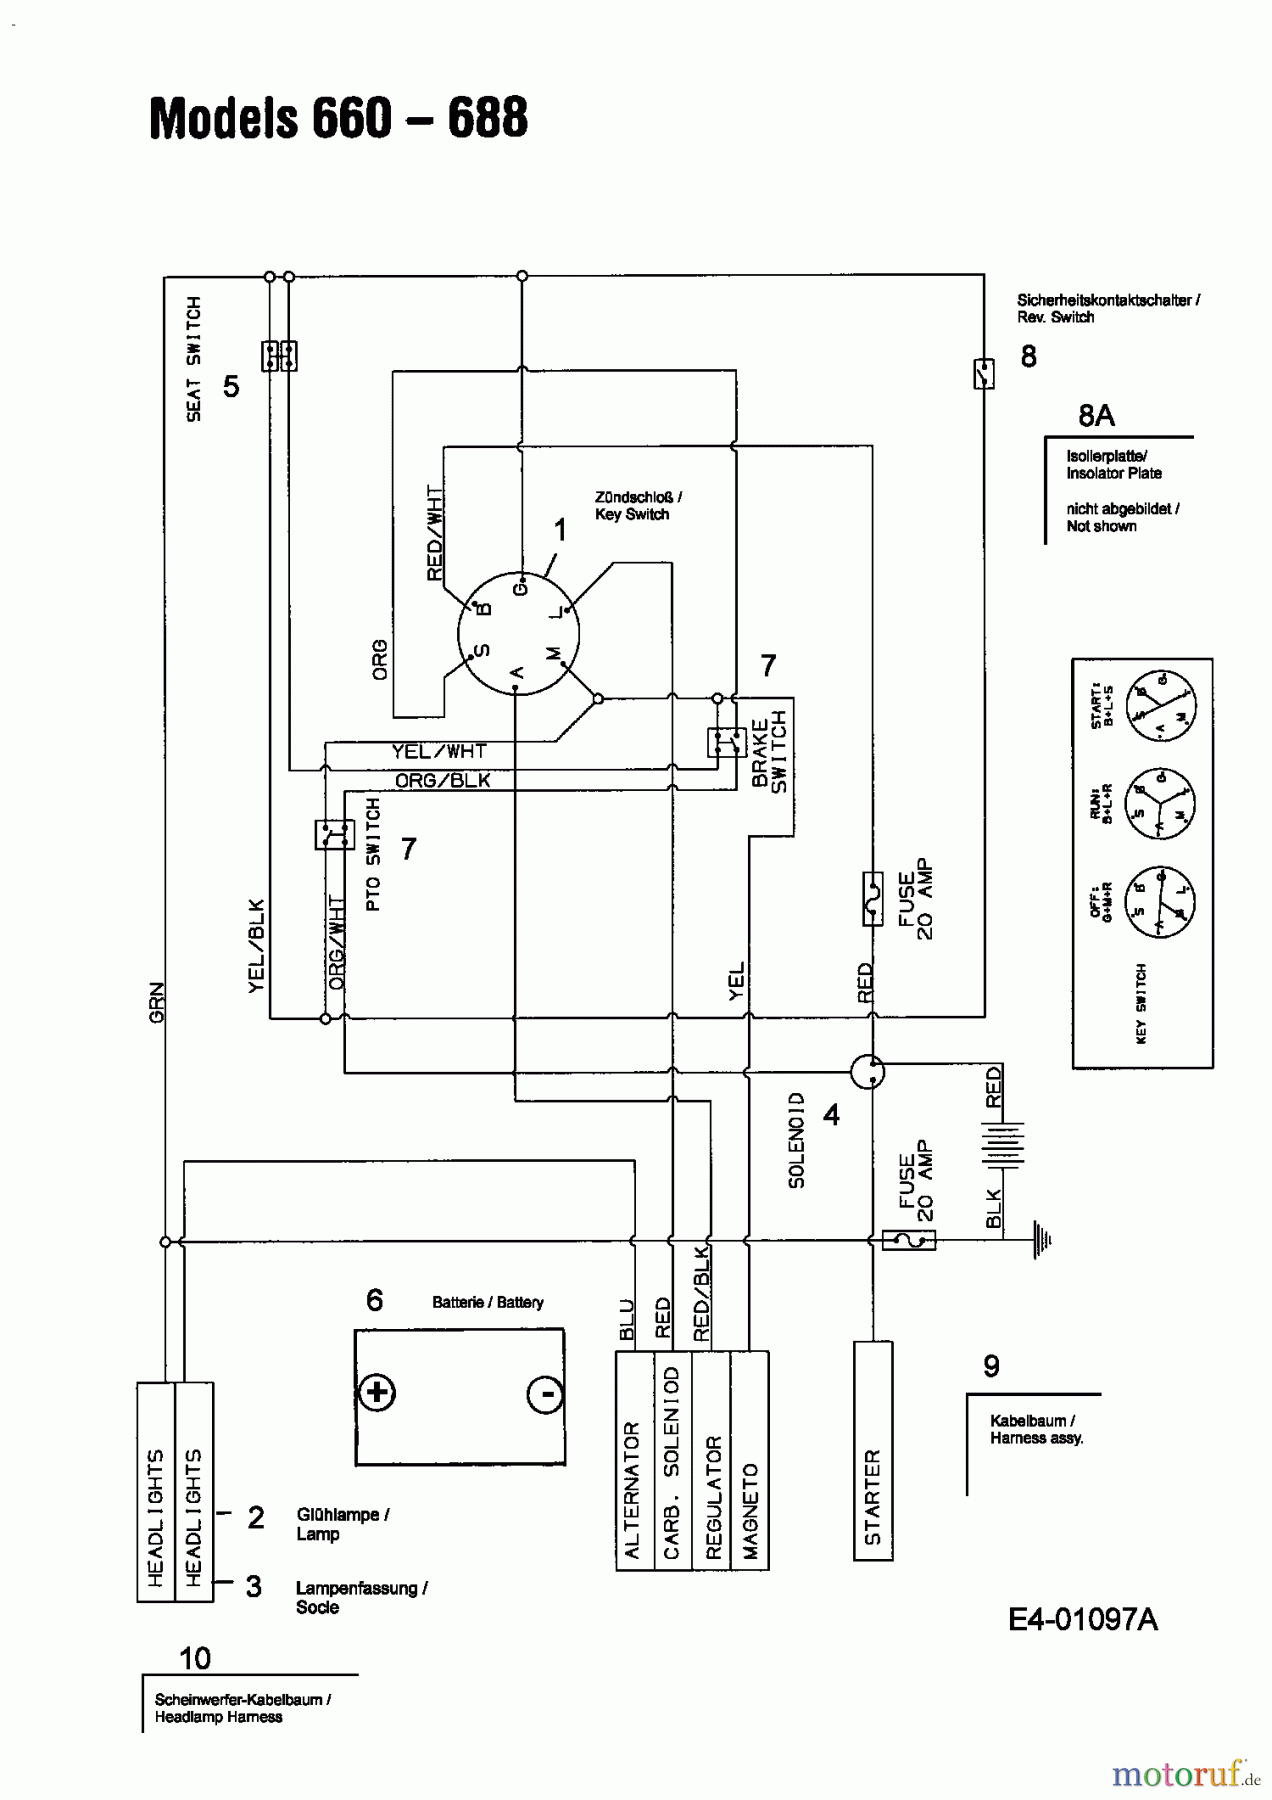  MTD Lawn tractors B 135 13AA668F678  (2004) Wiring diagram